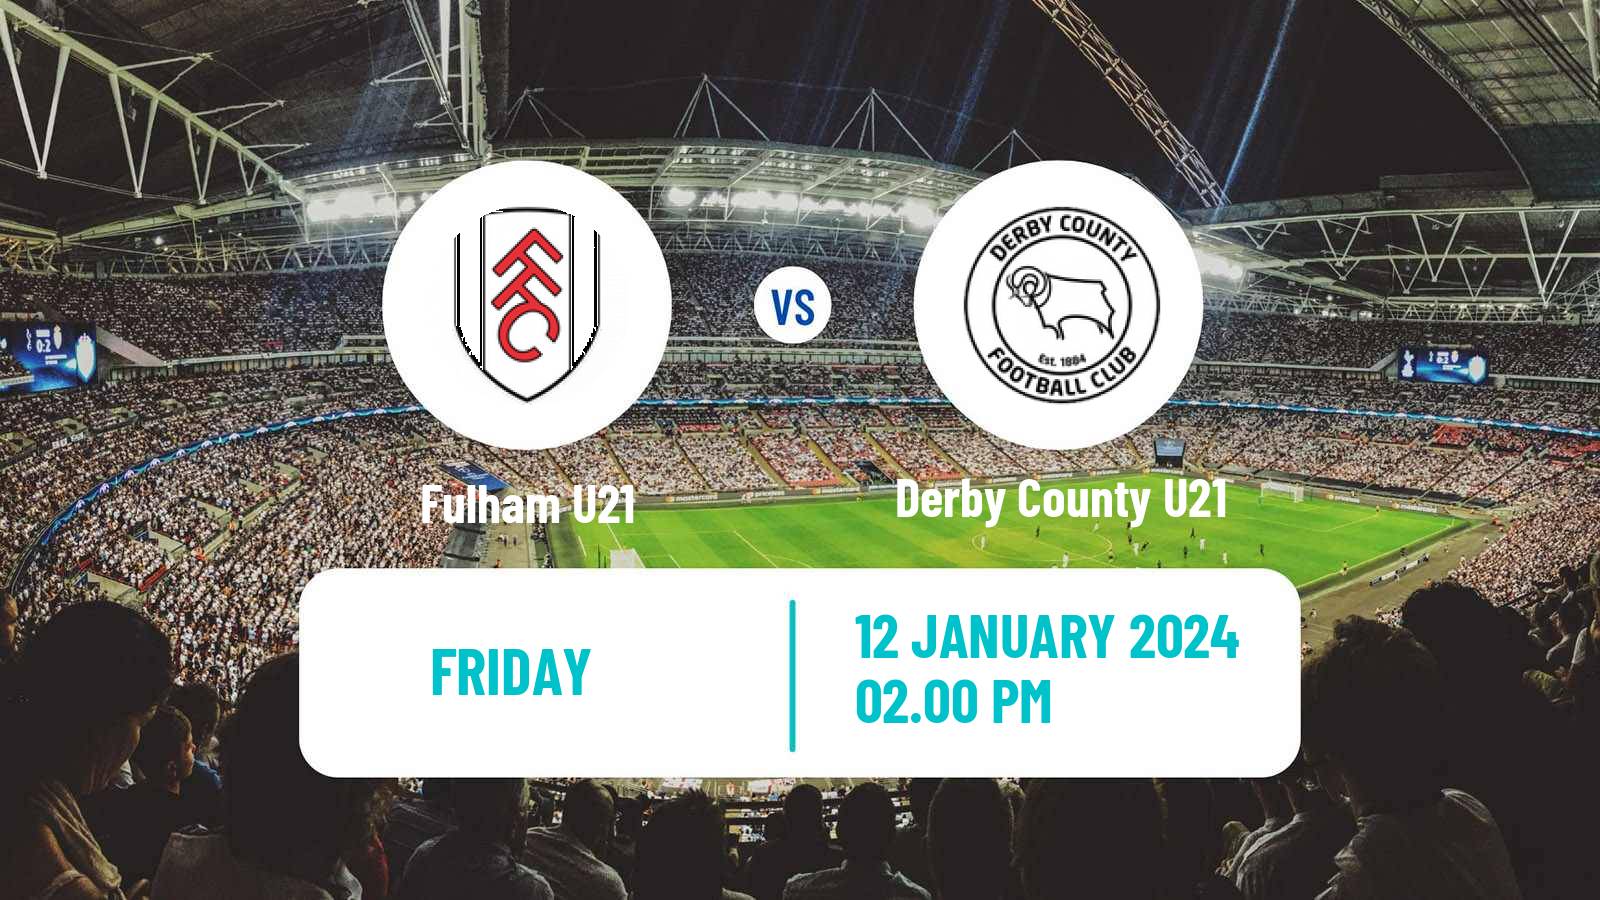 Soccer English Premier League 2 Fulham U21 - Derby County U21